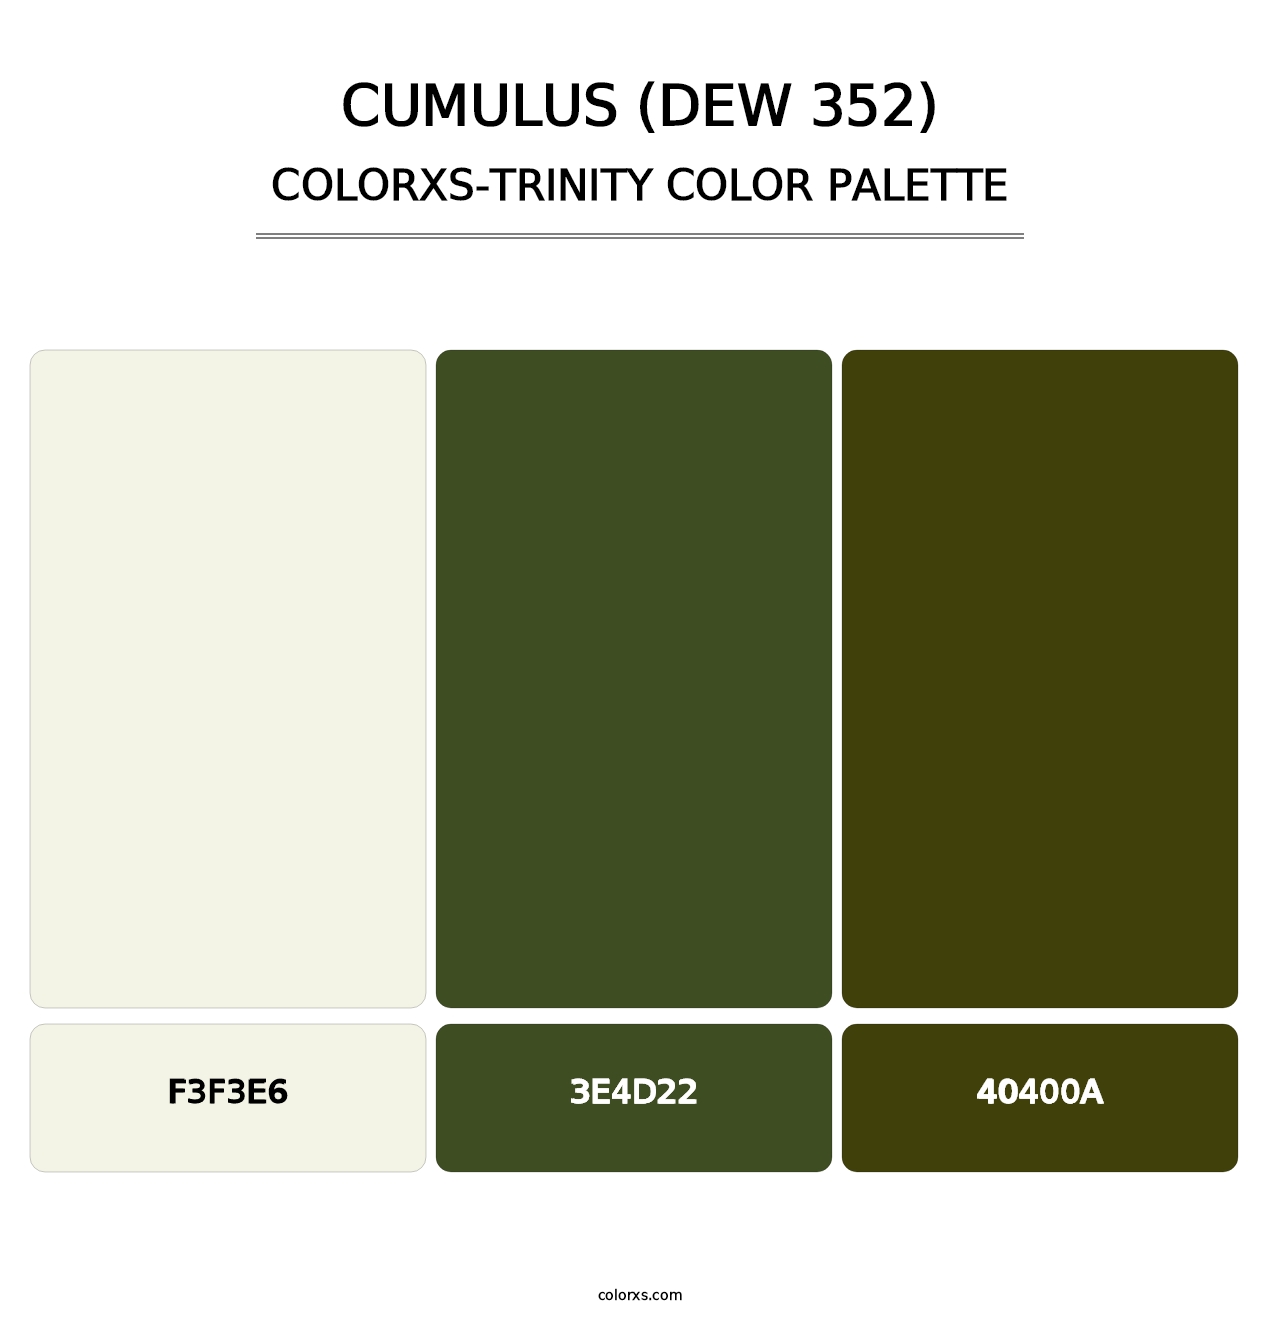 Cumulus (DEW 352) - Colorxs Trinity Palette